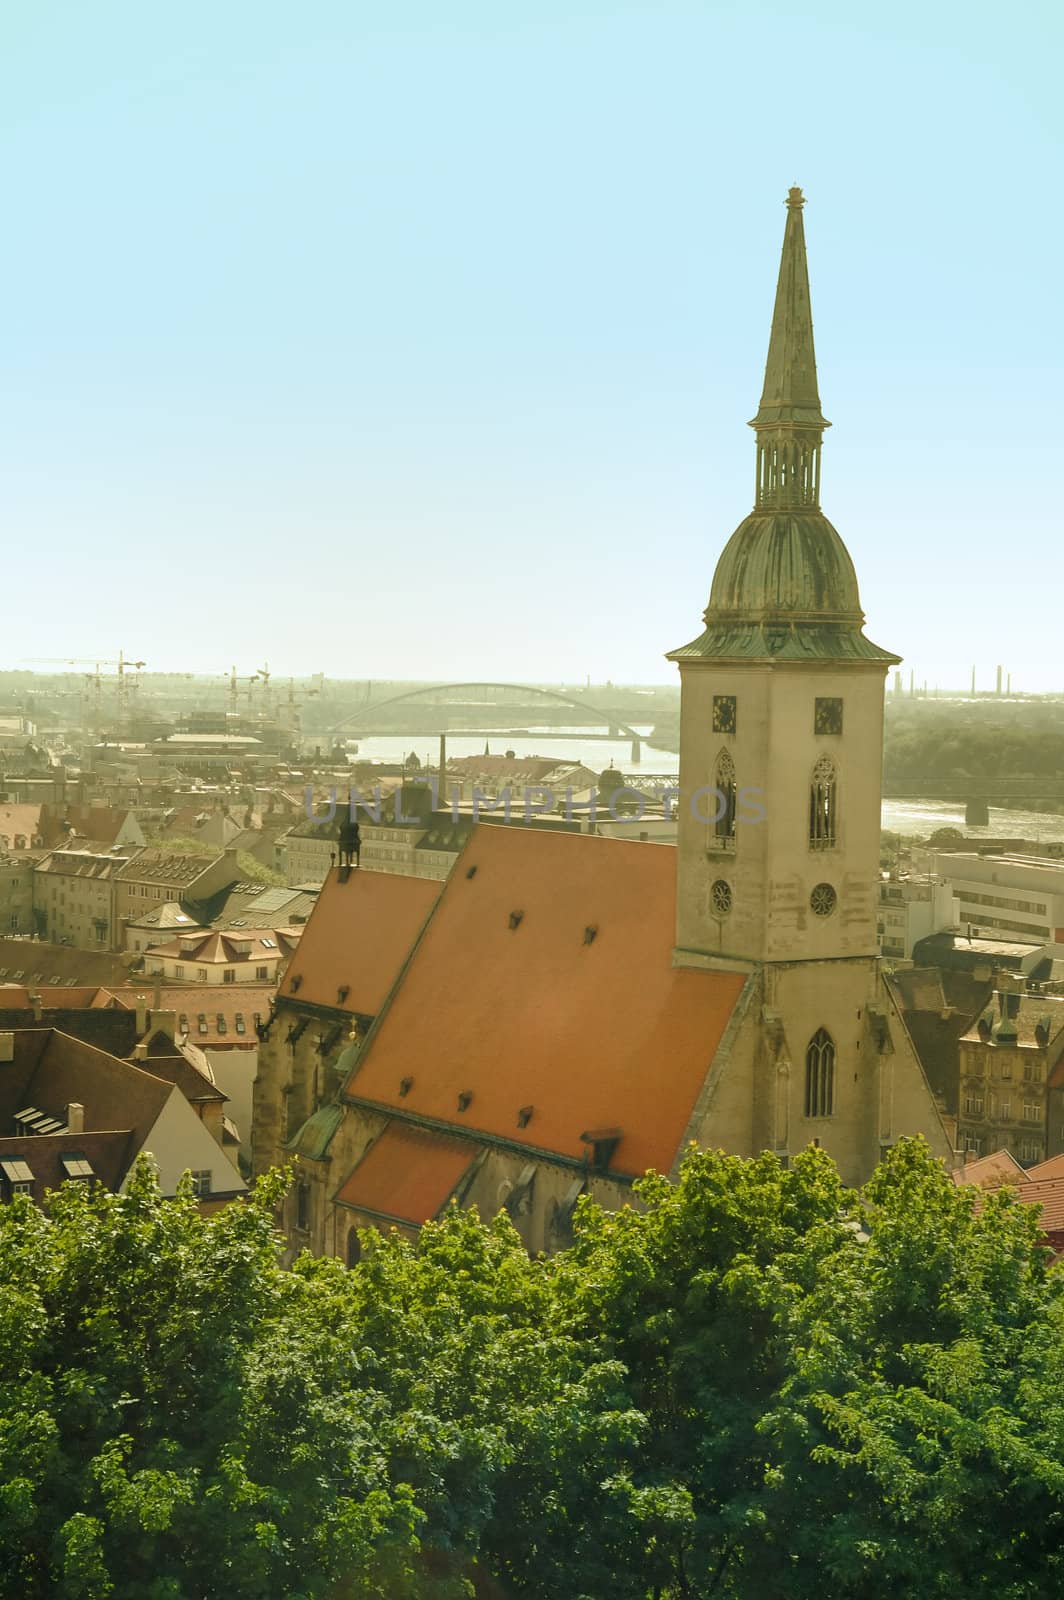 View on a Saint Martin's Church in Bratislava, Apollo bridge in distance